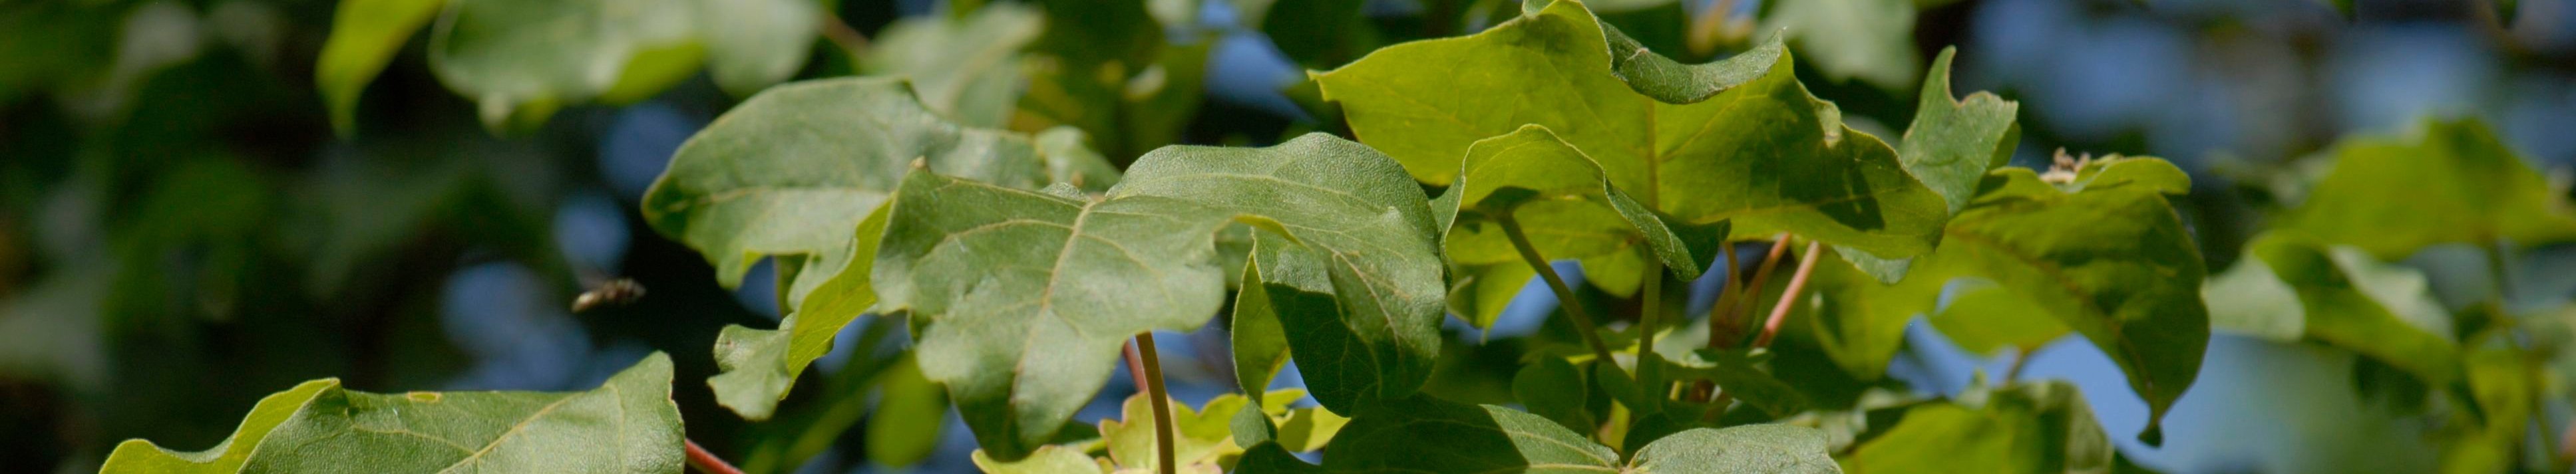 Zweig mit den kleinen, gelappten grünen Blättern des Feldahorns vor blauem Himmel